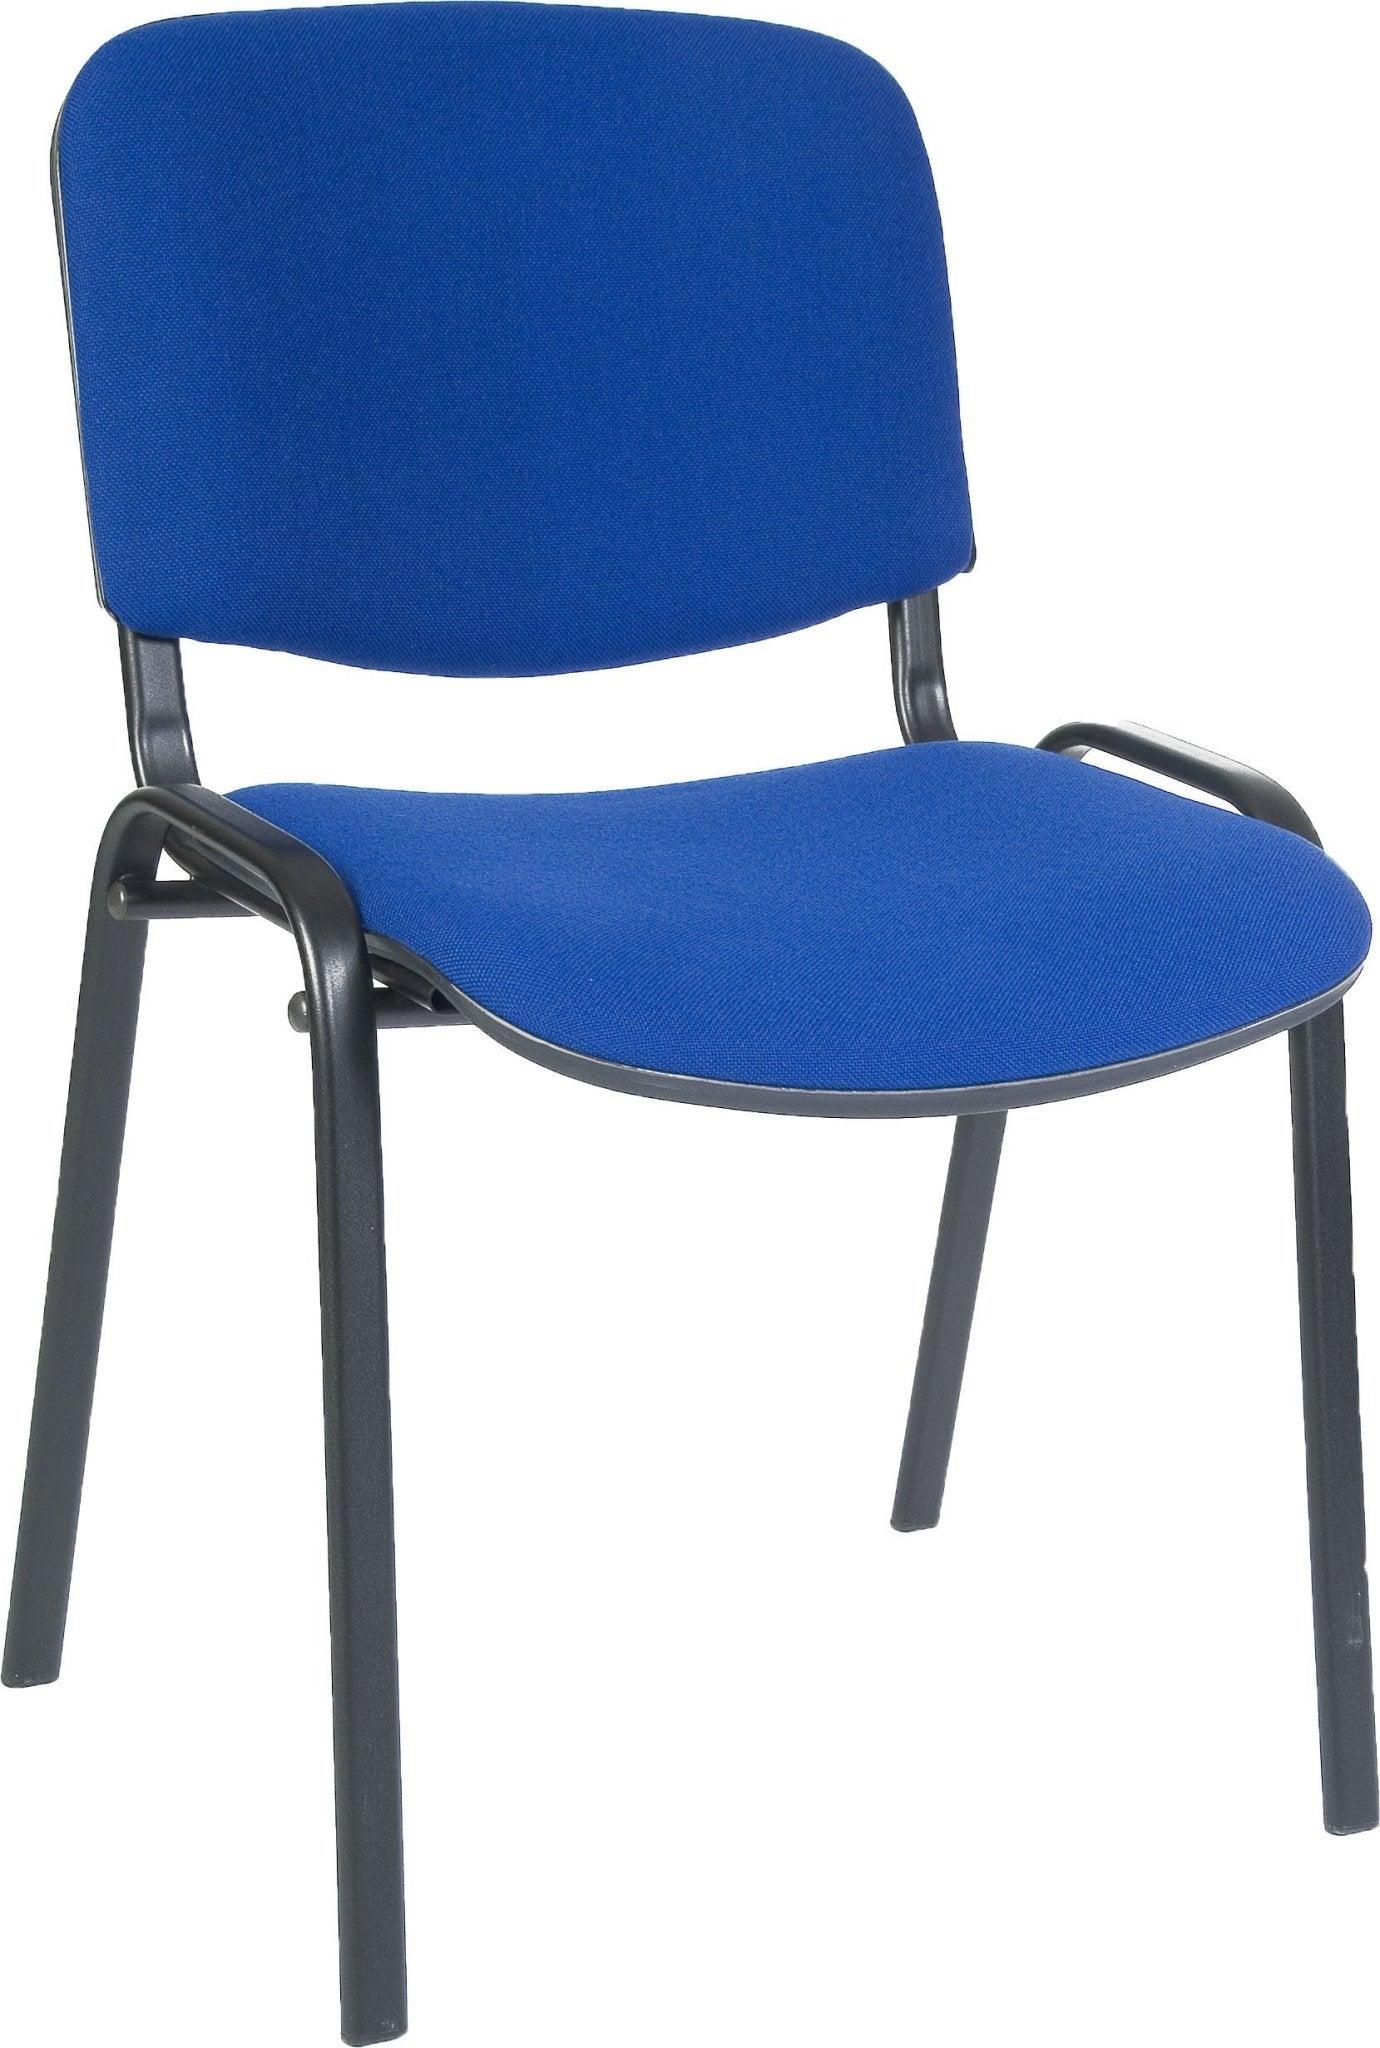 Conference room chair (blue) - crimblefest furniture - image 3